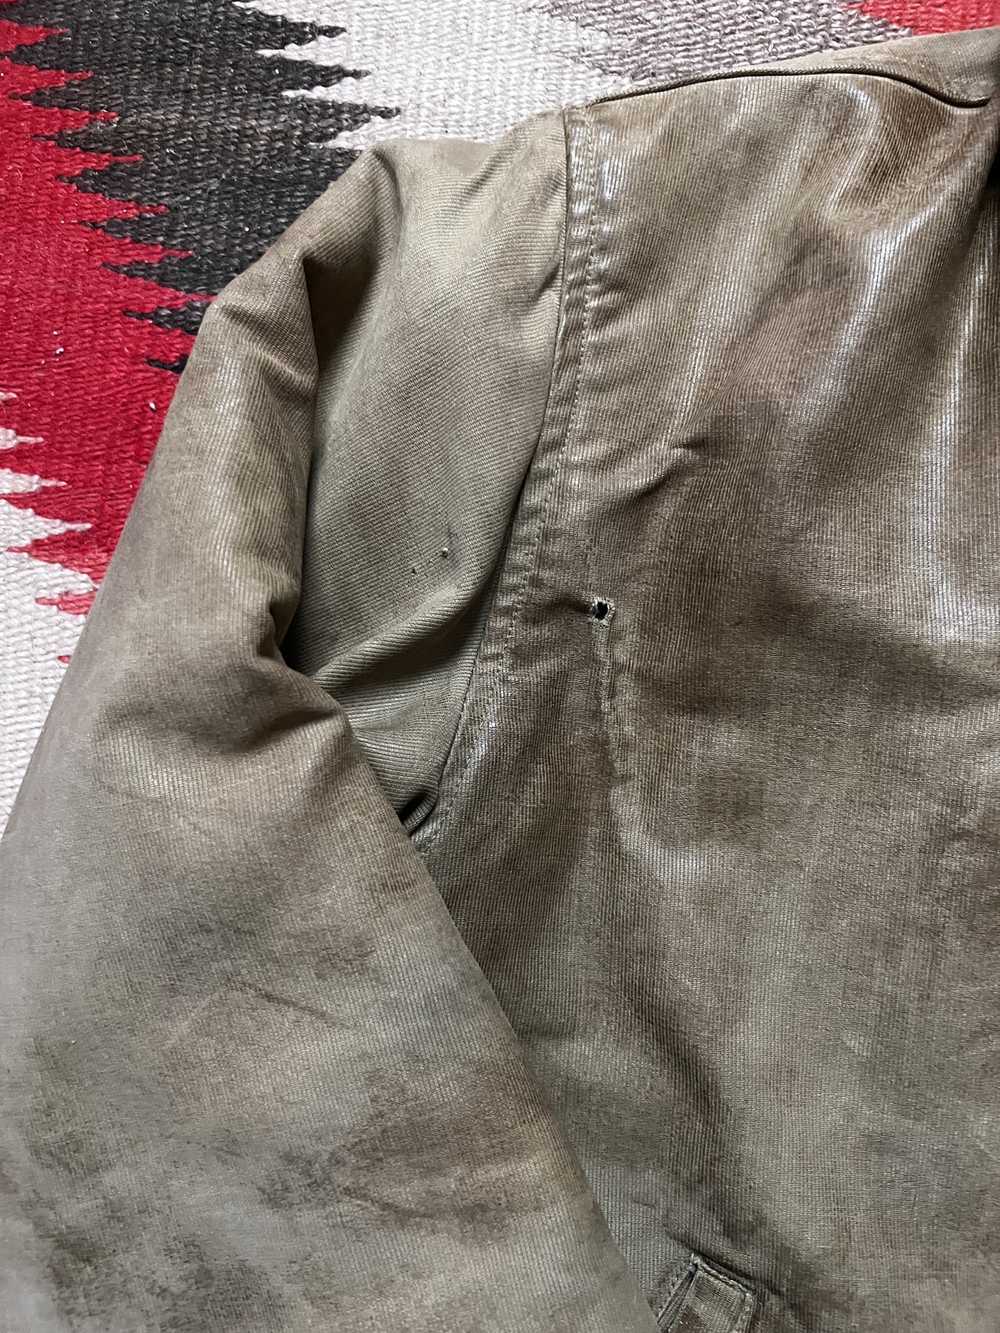 Vintage Vintage N1 Deck Jacket - image 4